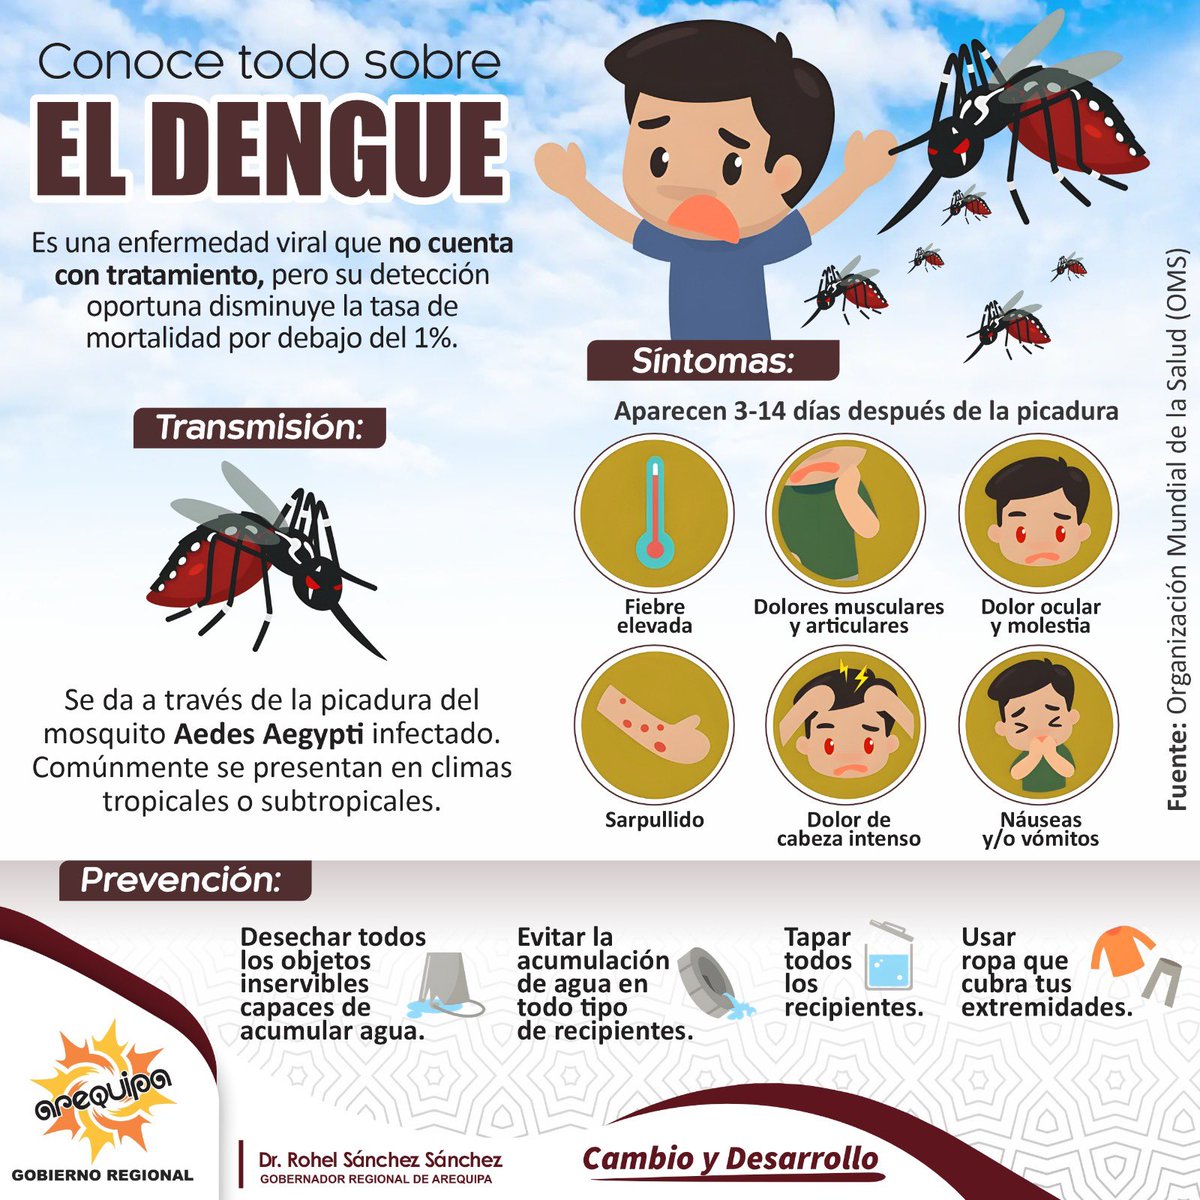 ☝️📌 🦟 El dengue es una enfermedad viral transmitida por la picadura del mosquito Aedes Aegypti, conocido como el mosquito “hogareño” por sus hábitos domiciliarios. Es de color oscuro con franjas y manchas blancas y se cría en recipientes con agua. #Arequipa #Salud #Prevención